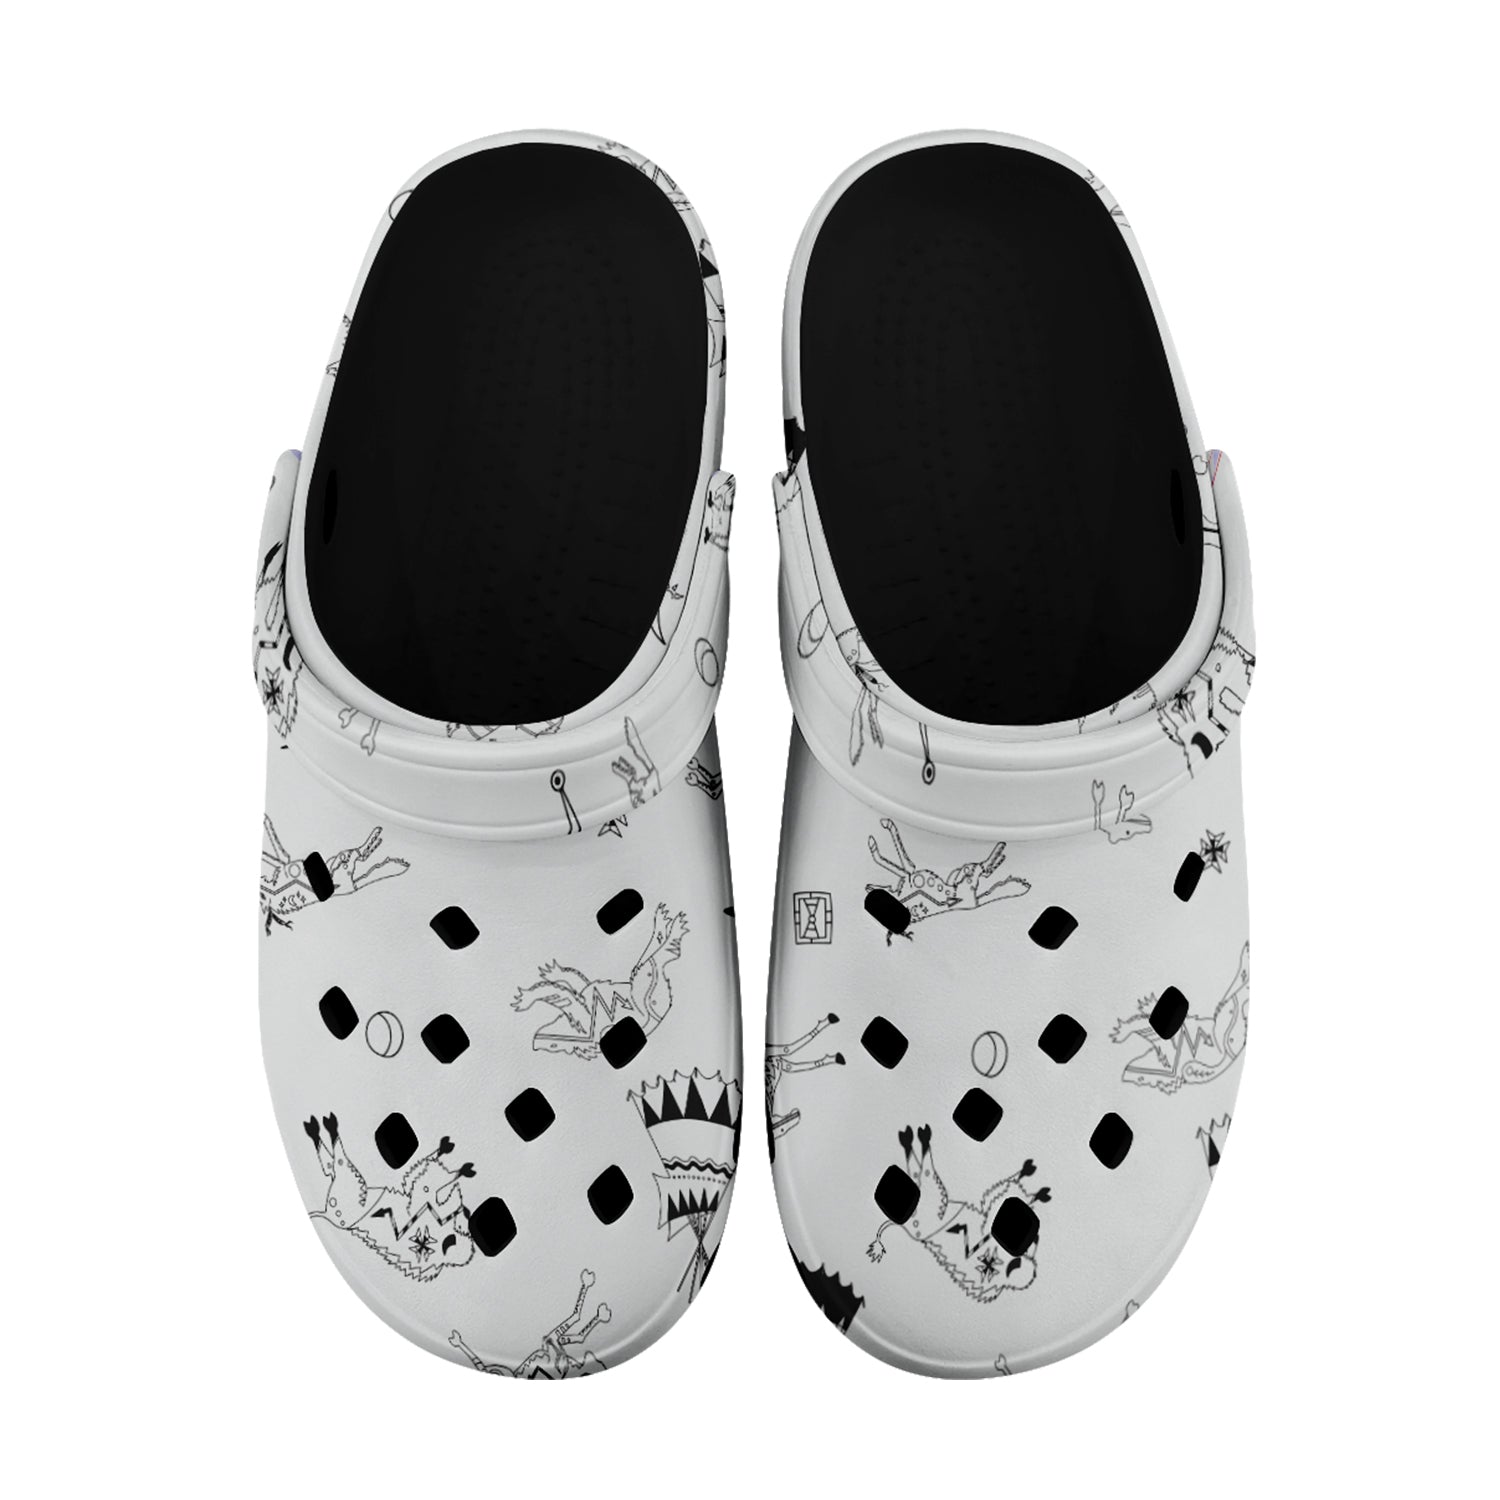 Ledger Dabbles White Muddies Unisex Clog Shoes